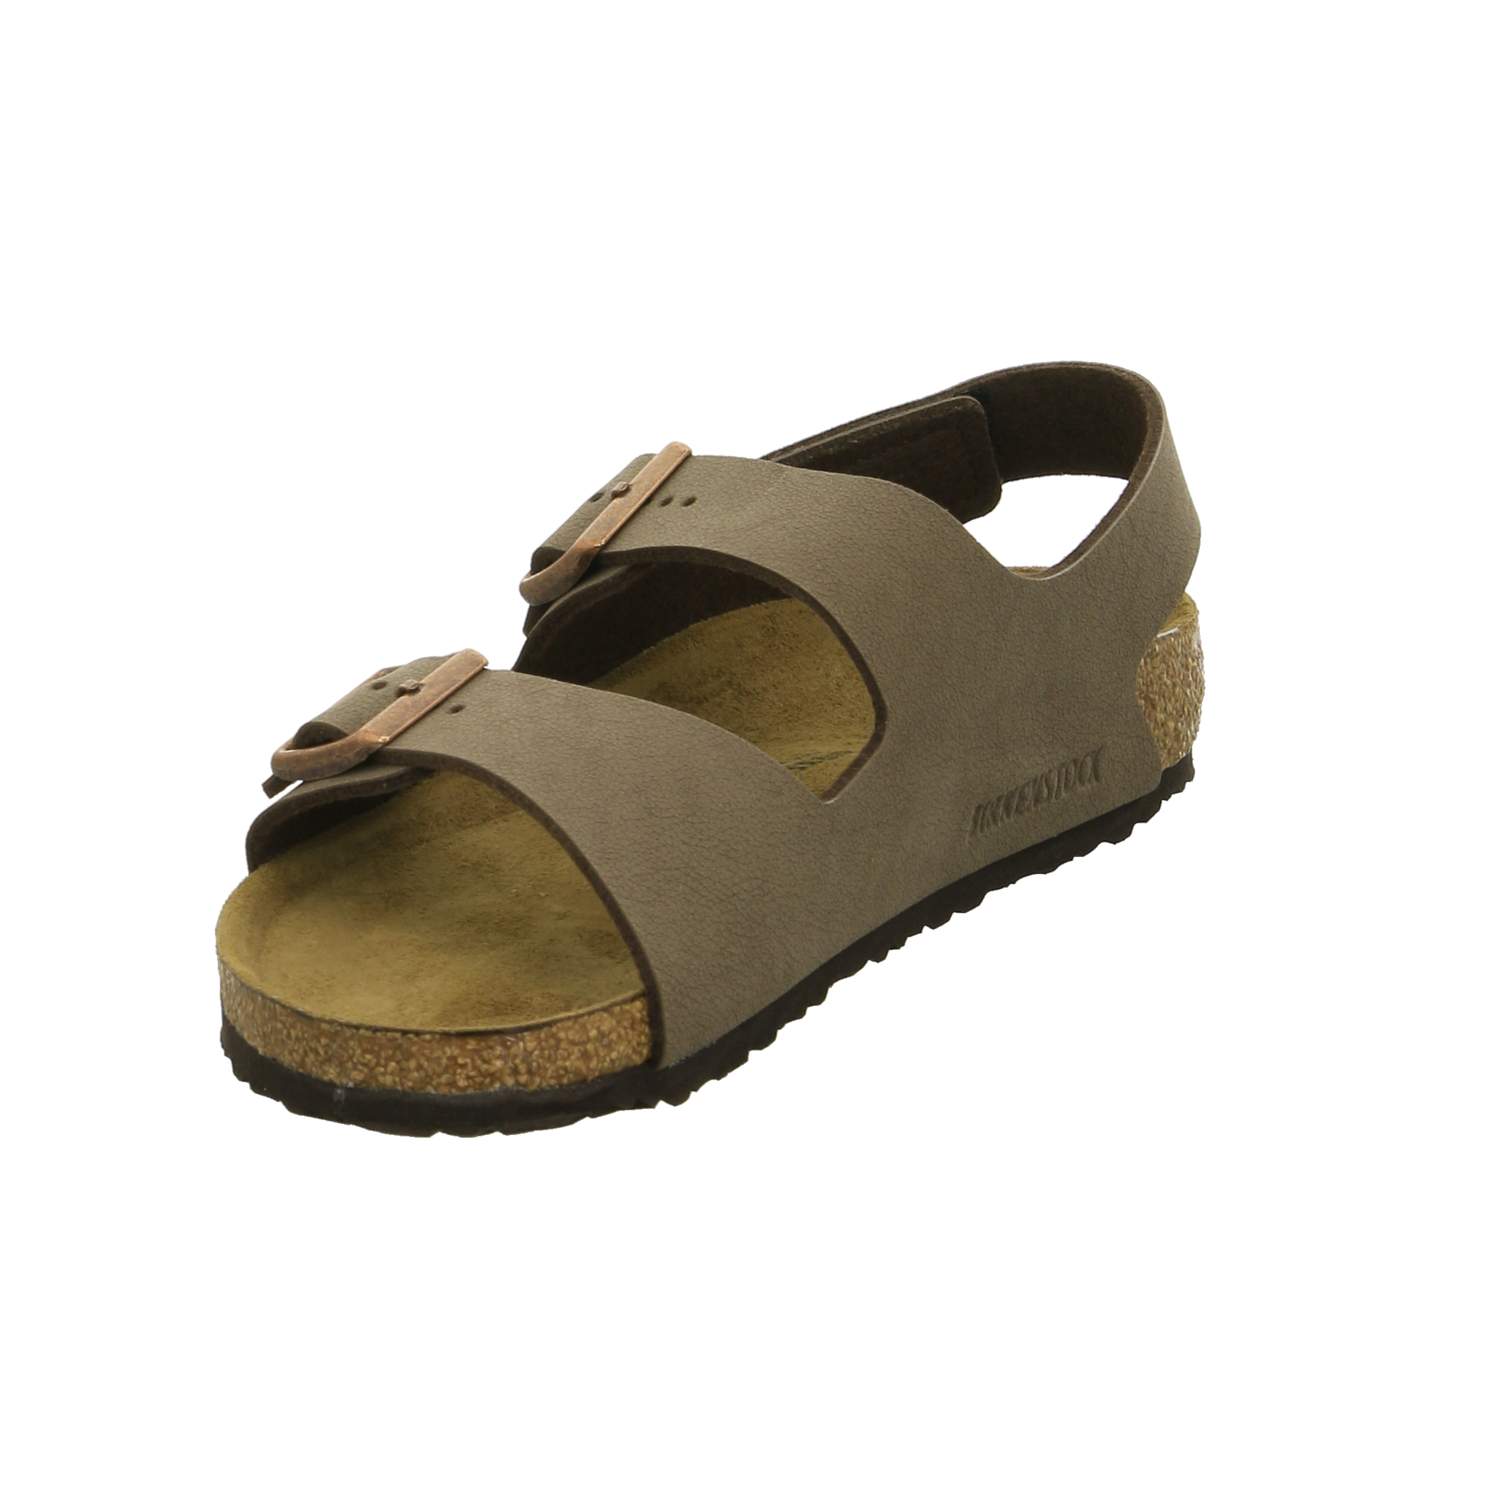 Birkenstock Sandalette J braun / dunkel-braun